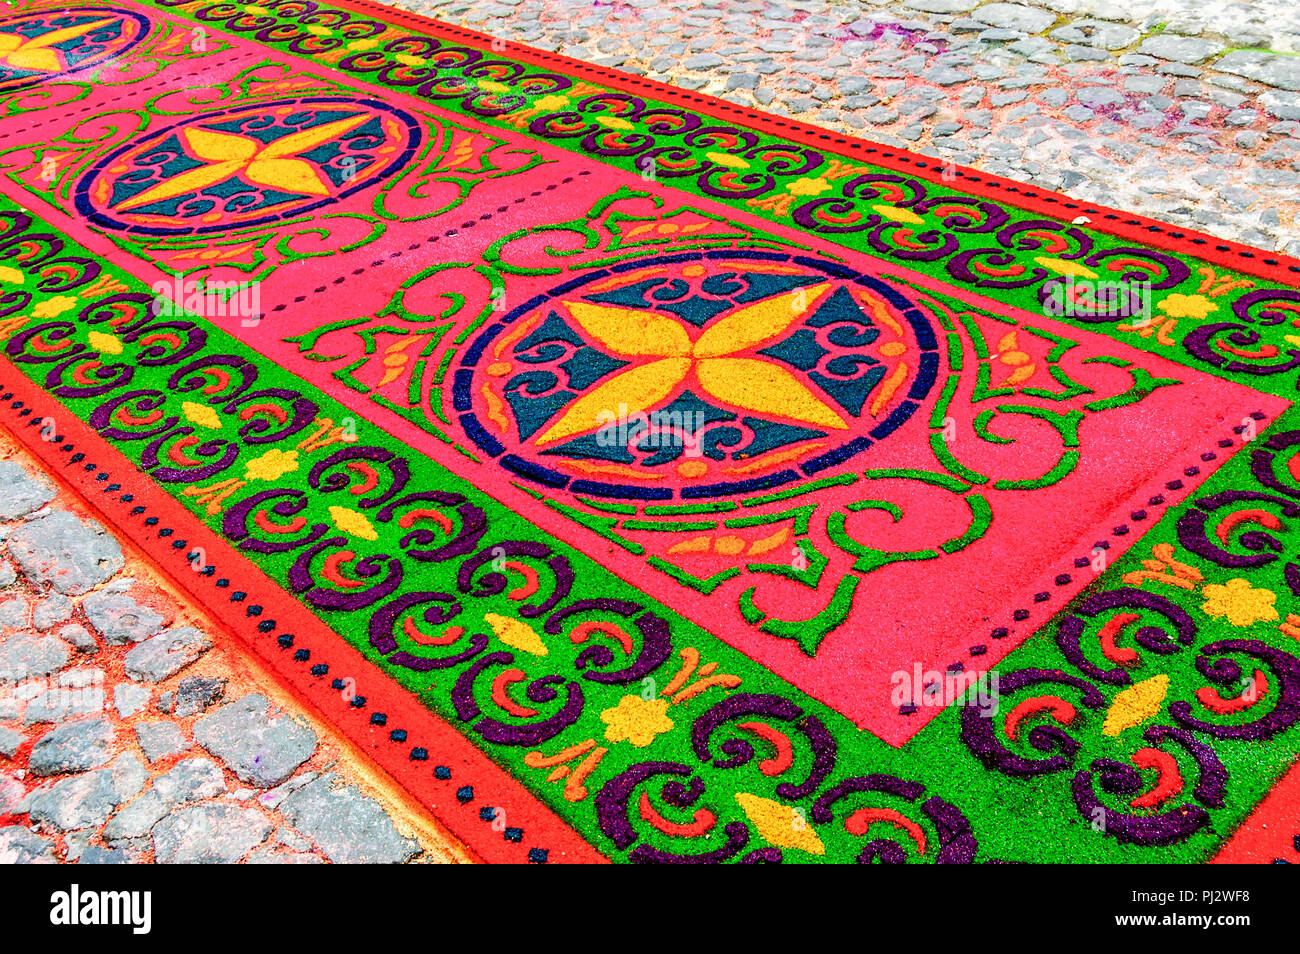 Antigua, Guatemala - 1. März 2015: Gefärbte Sägespäne Heilige Woche Prozession Teppich in der Stadt mit dem berühmtesten Feierlichkeiten zur Karwoche in Lateinamerika. Stockfoto